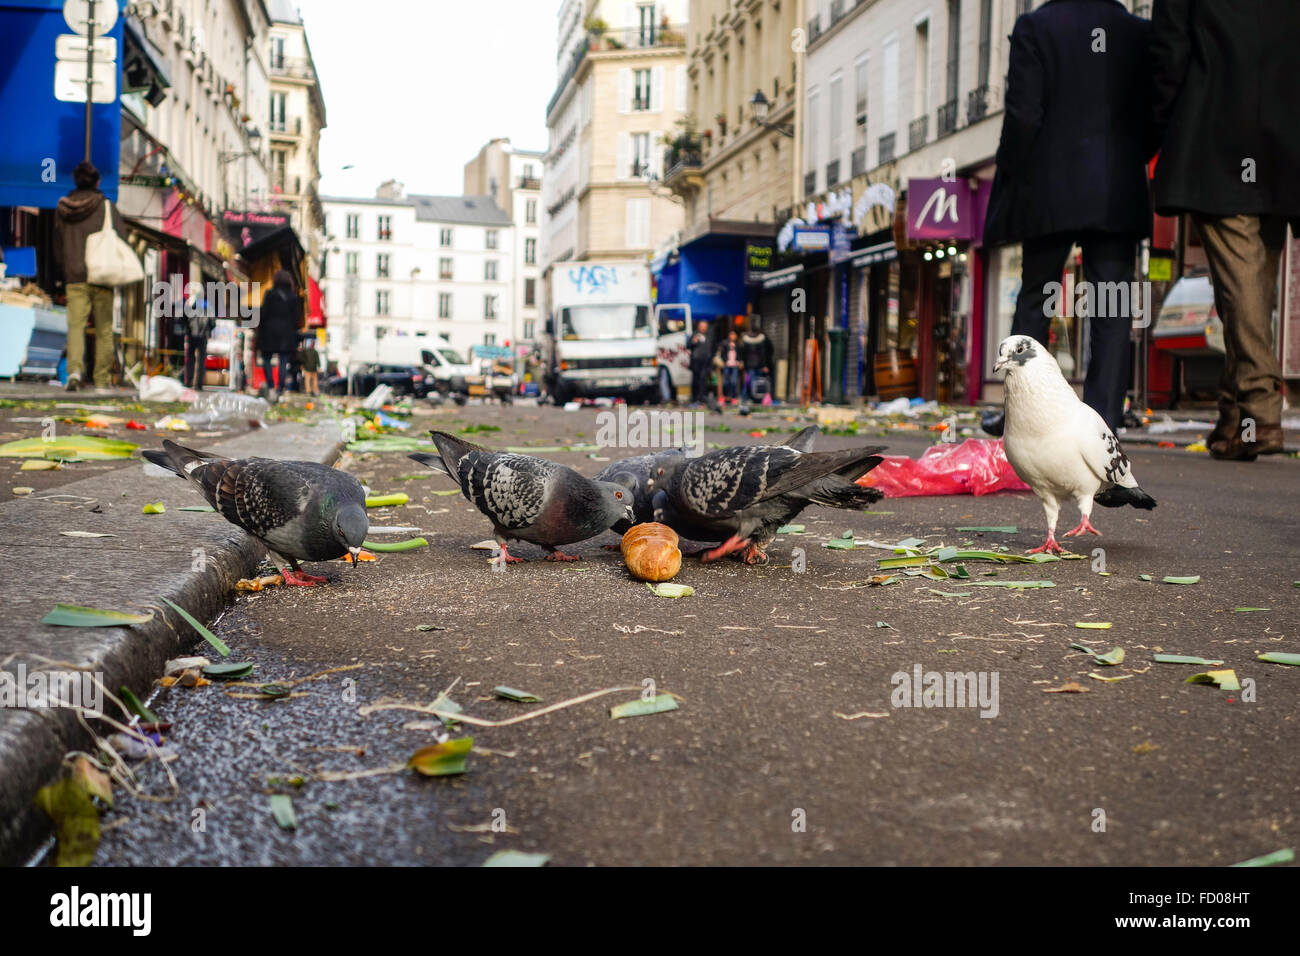 Tauben Essen bleibt nach Abschluss der Obst und Gemüse Markt im Freien am Marché Aligre, d'Aligre, Aligre Street, Aligre Square, Paris, Frankreich. Stockfoto